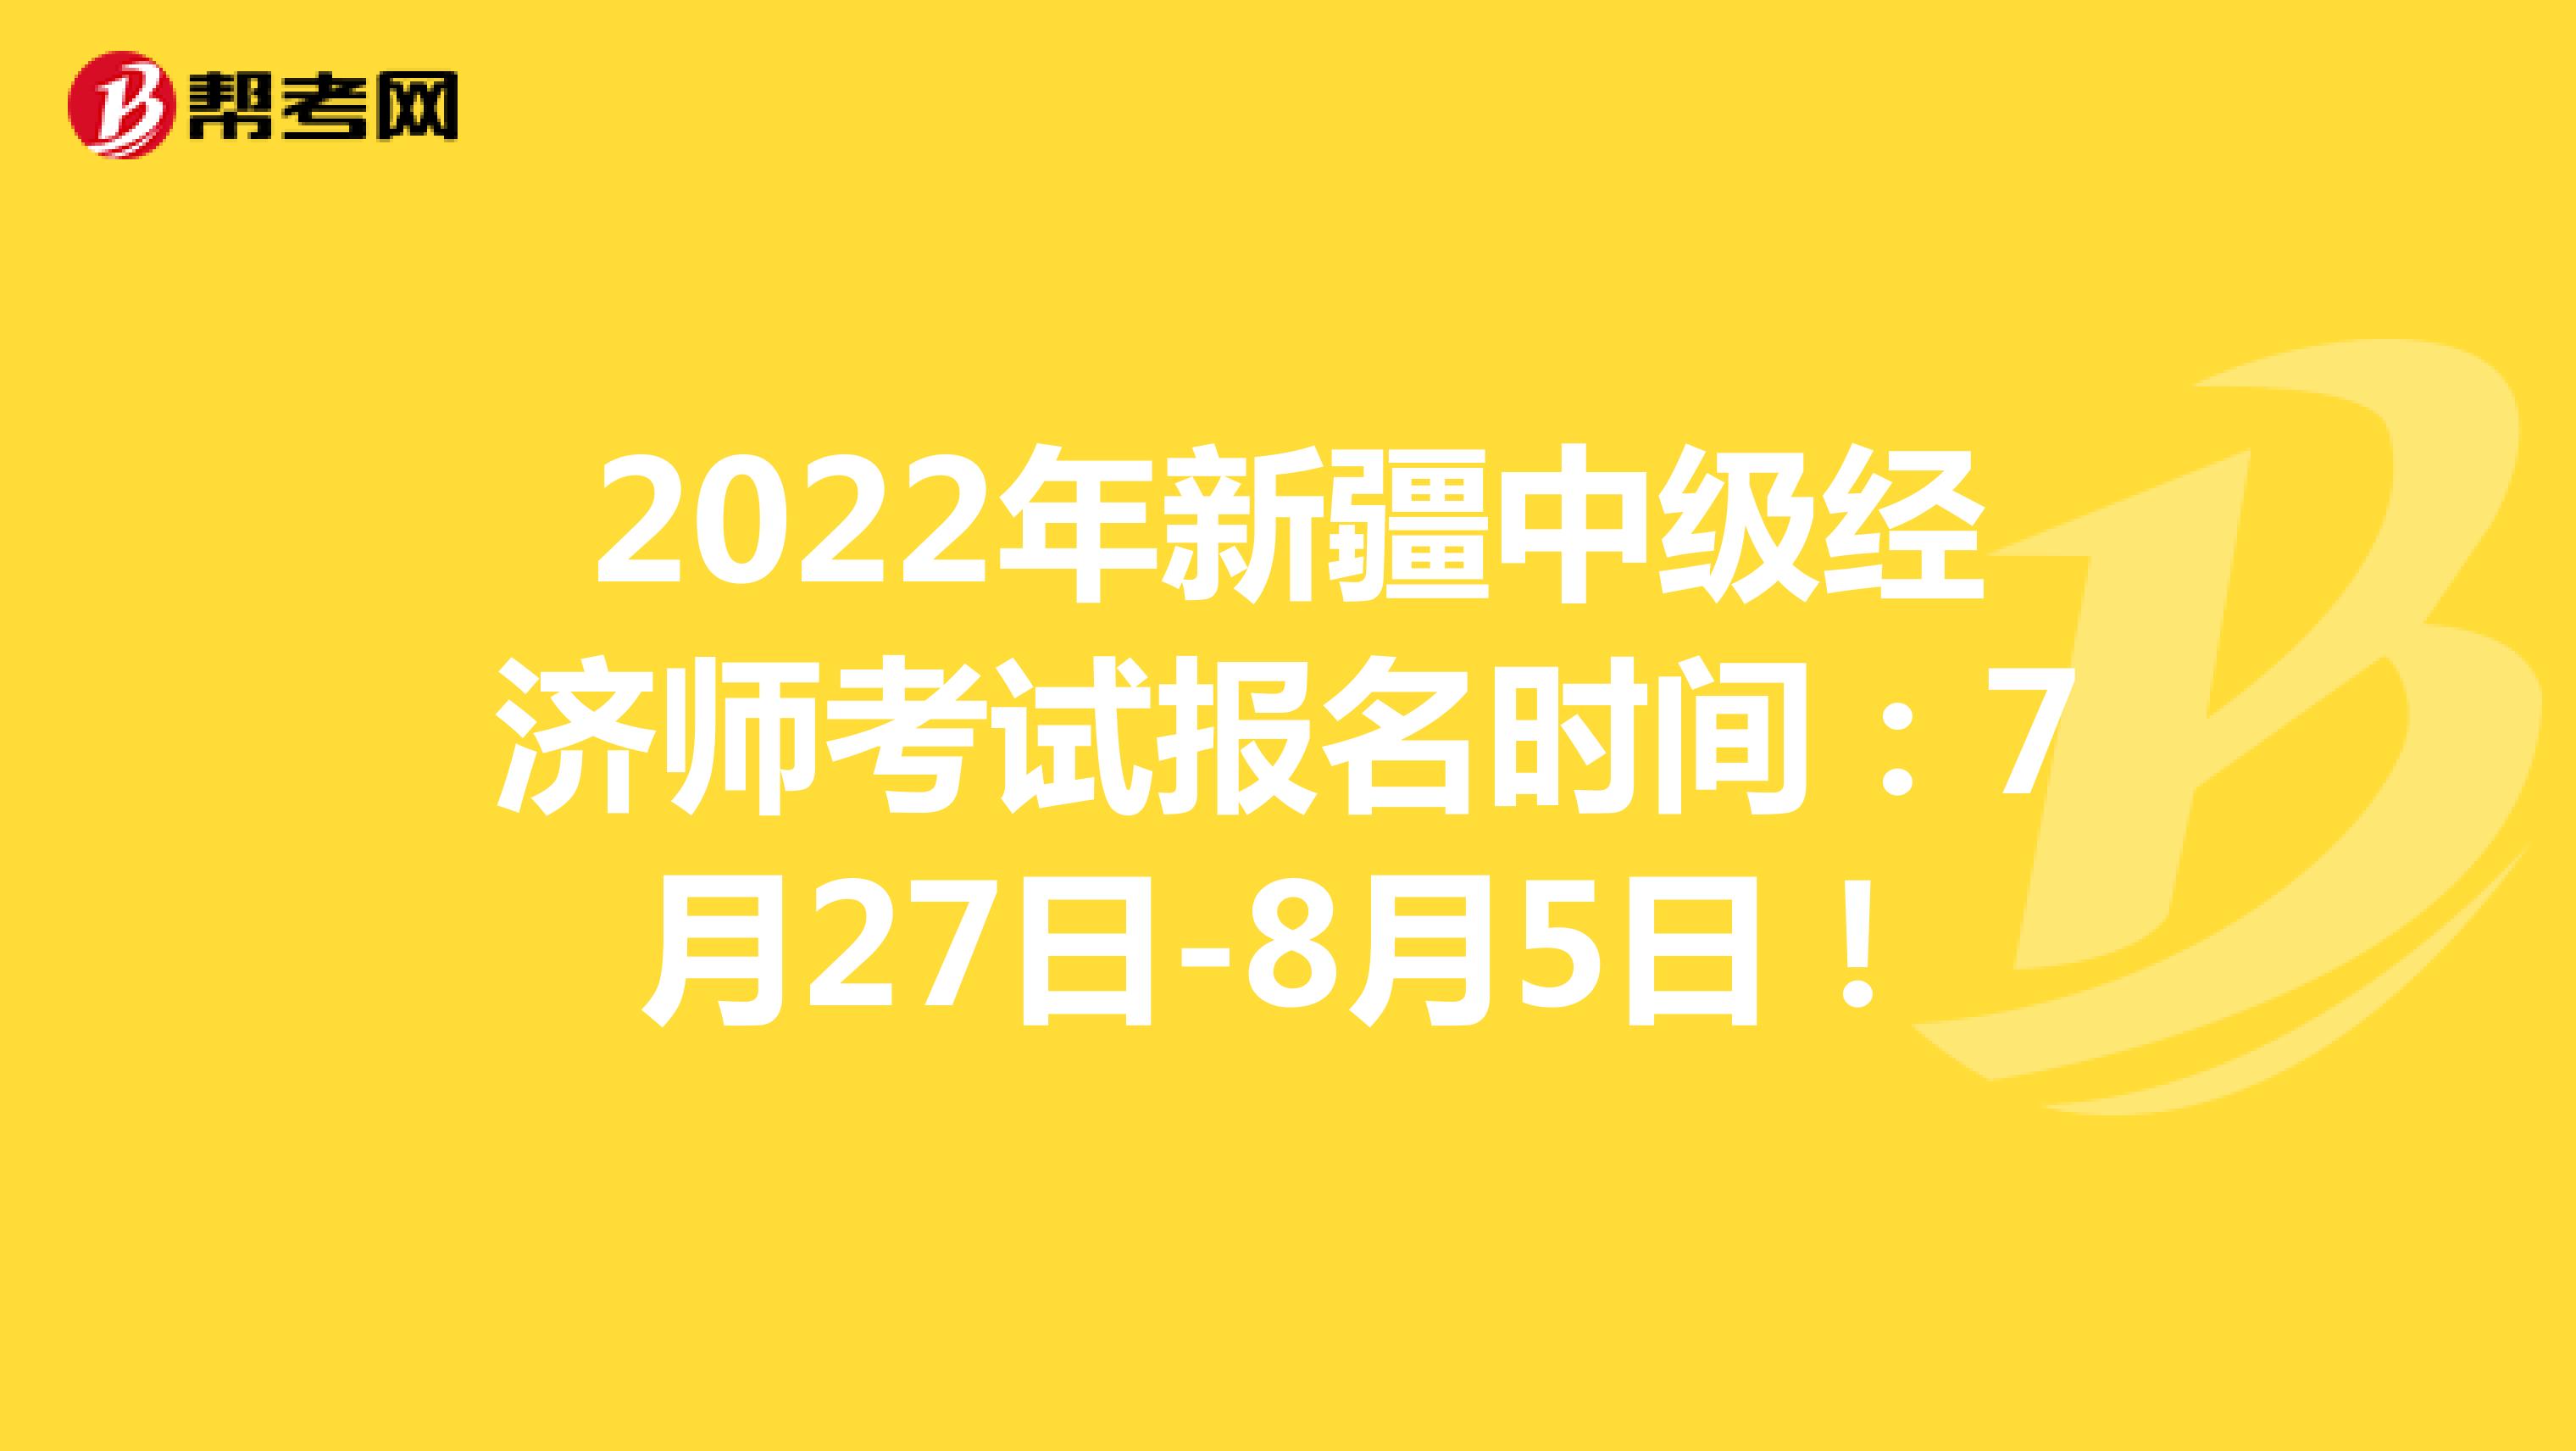 2022年新疆中級經濟師考試報名時間：7月27日-8月5日！